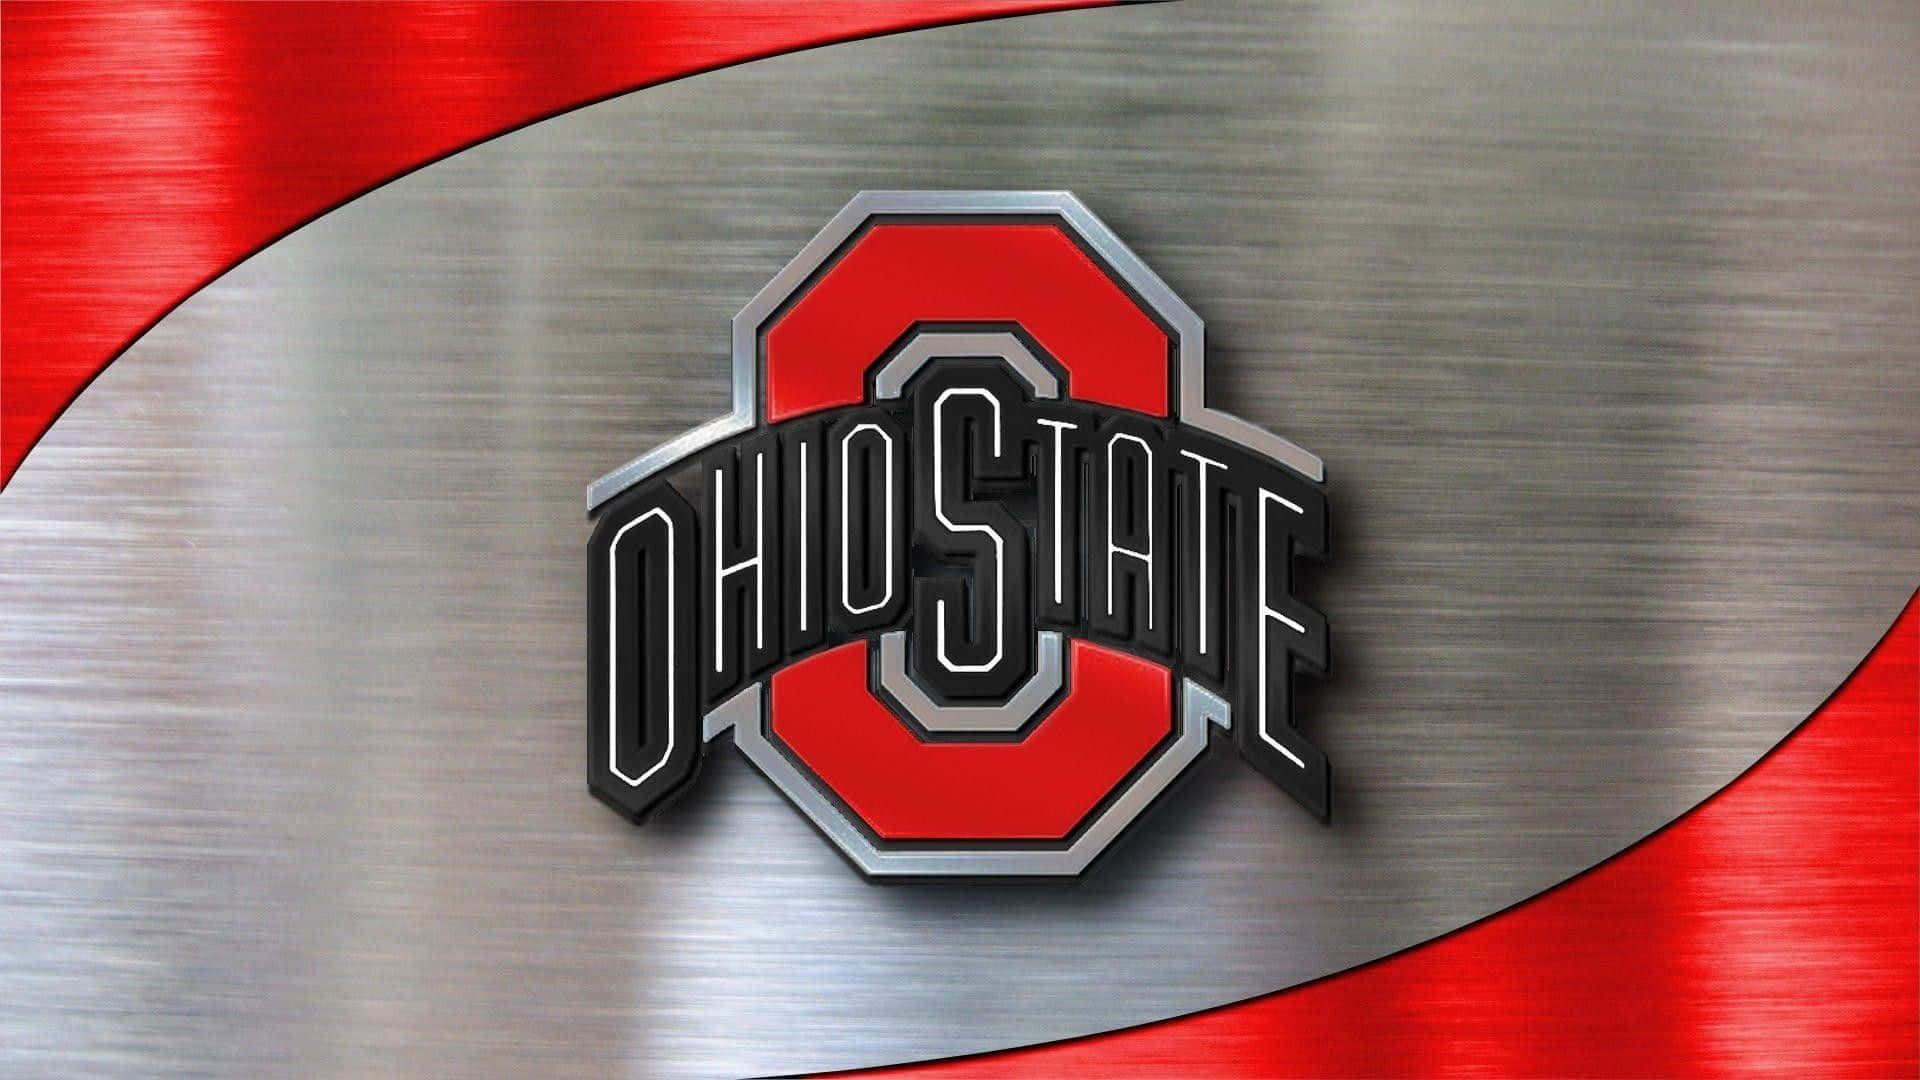 Logode Ohio State En Metal Plateado Brillante Y Metal Cepillado Rojo. Fondo de pantalla